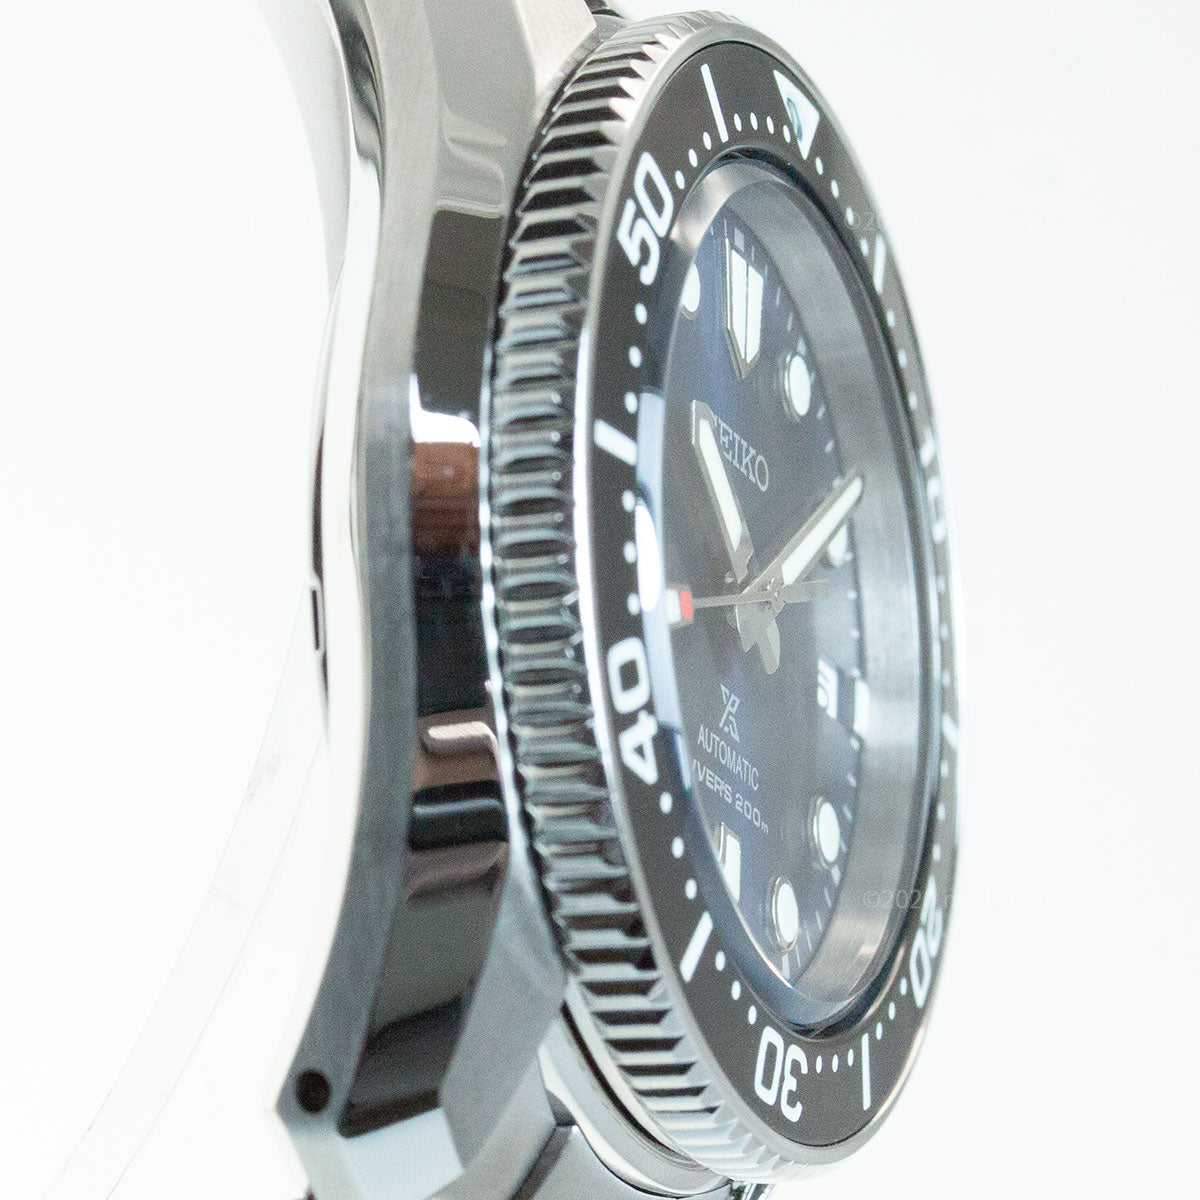 セイコー プロスペックス SEIKO PROSPEX ダイバースキューバ メカニカル 自動巻き コアショップ専用モデル 腕時計 メンズ SBDC127 1968メカニカルダイバーズ 現代デザイン